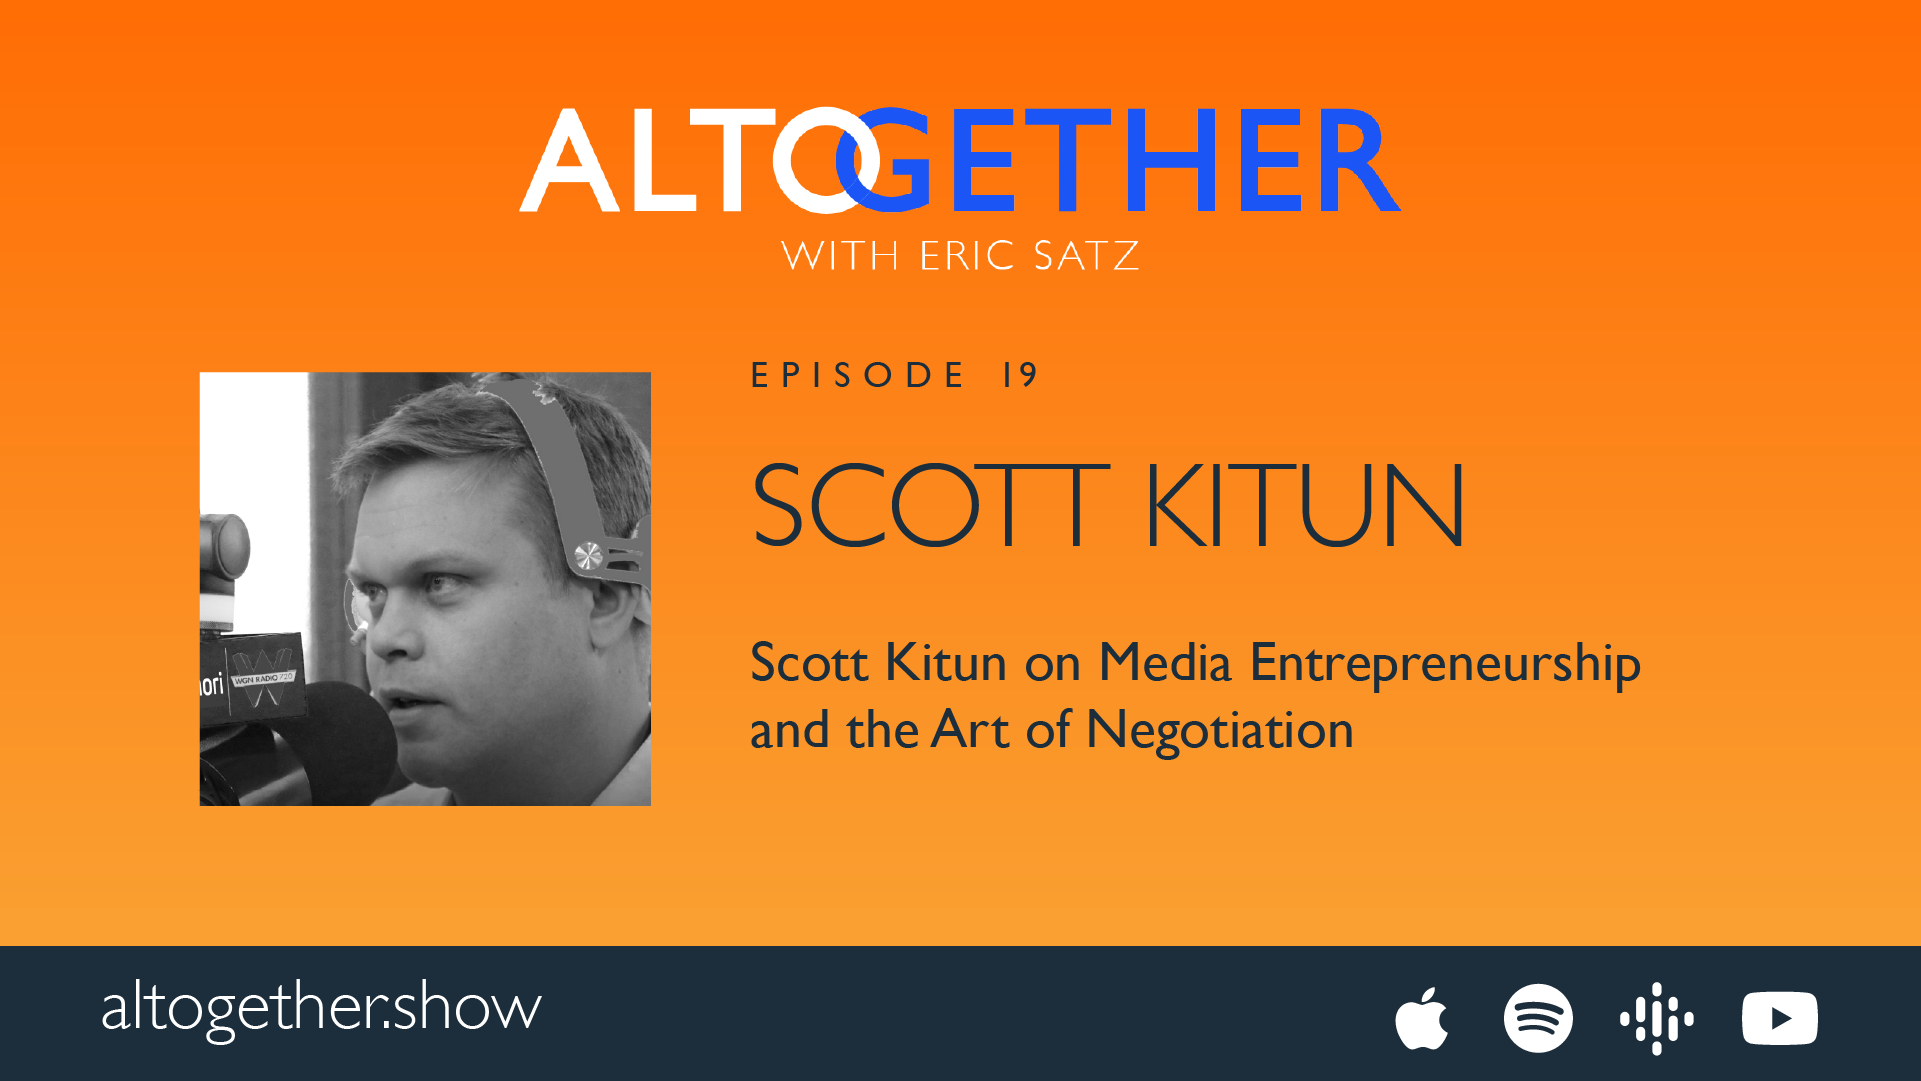 Scott Kitun on Media Entrepreneurship